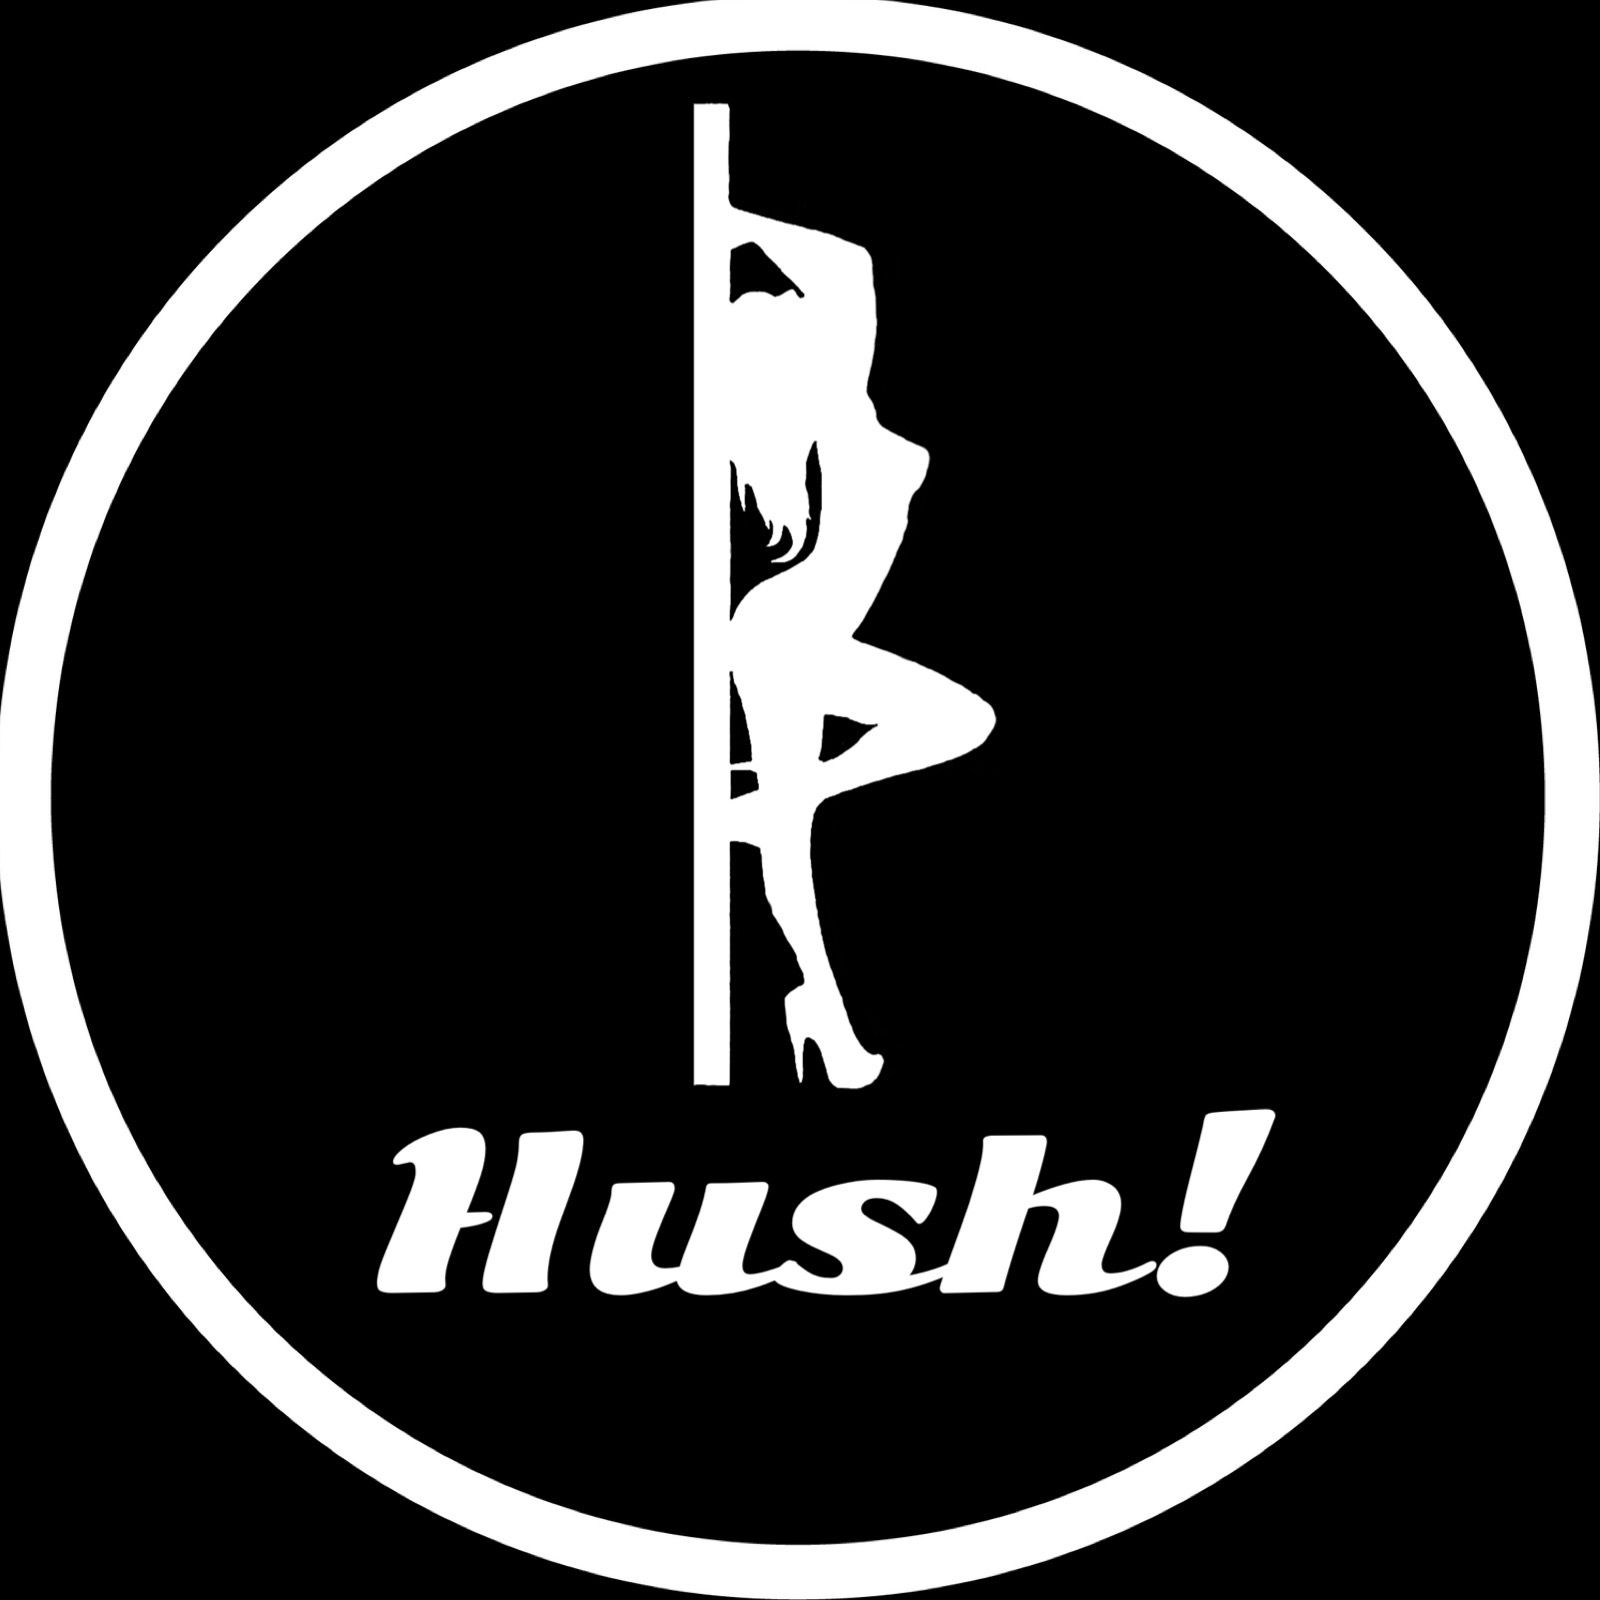 Hush! - Hush! Vol. 72- Enter the Kinky Confessional